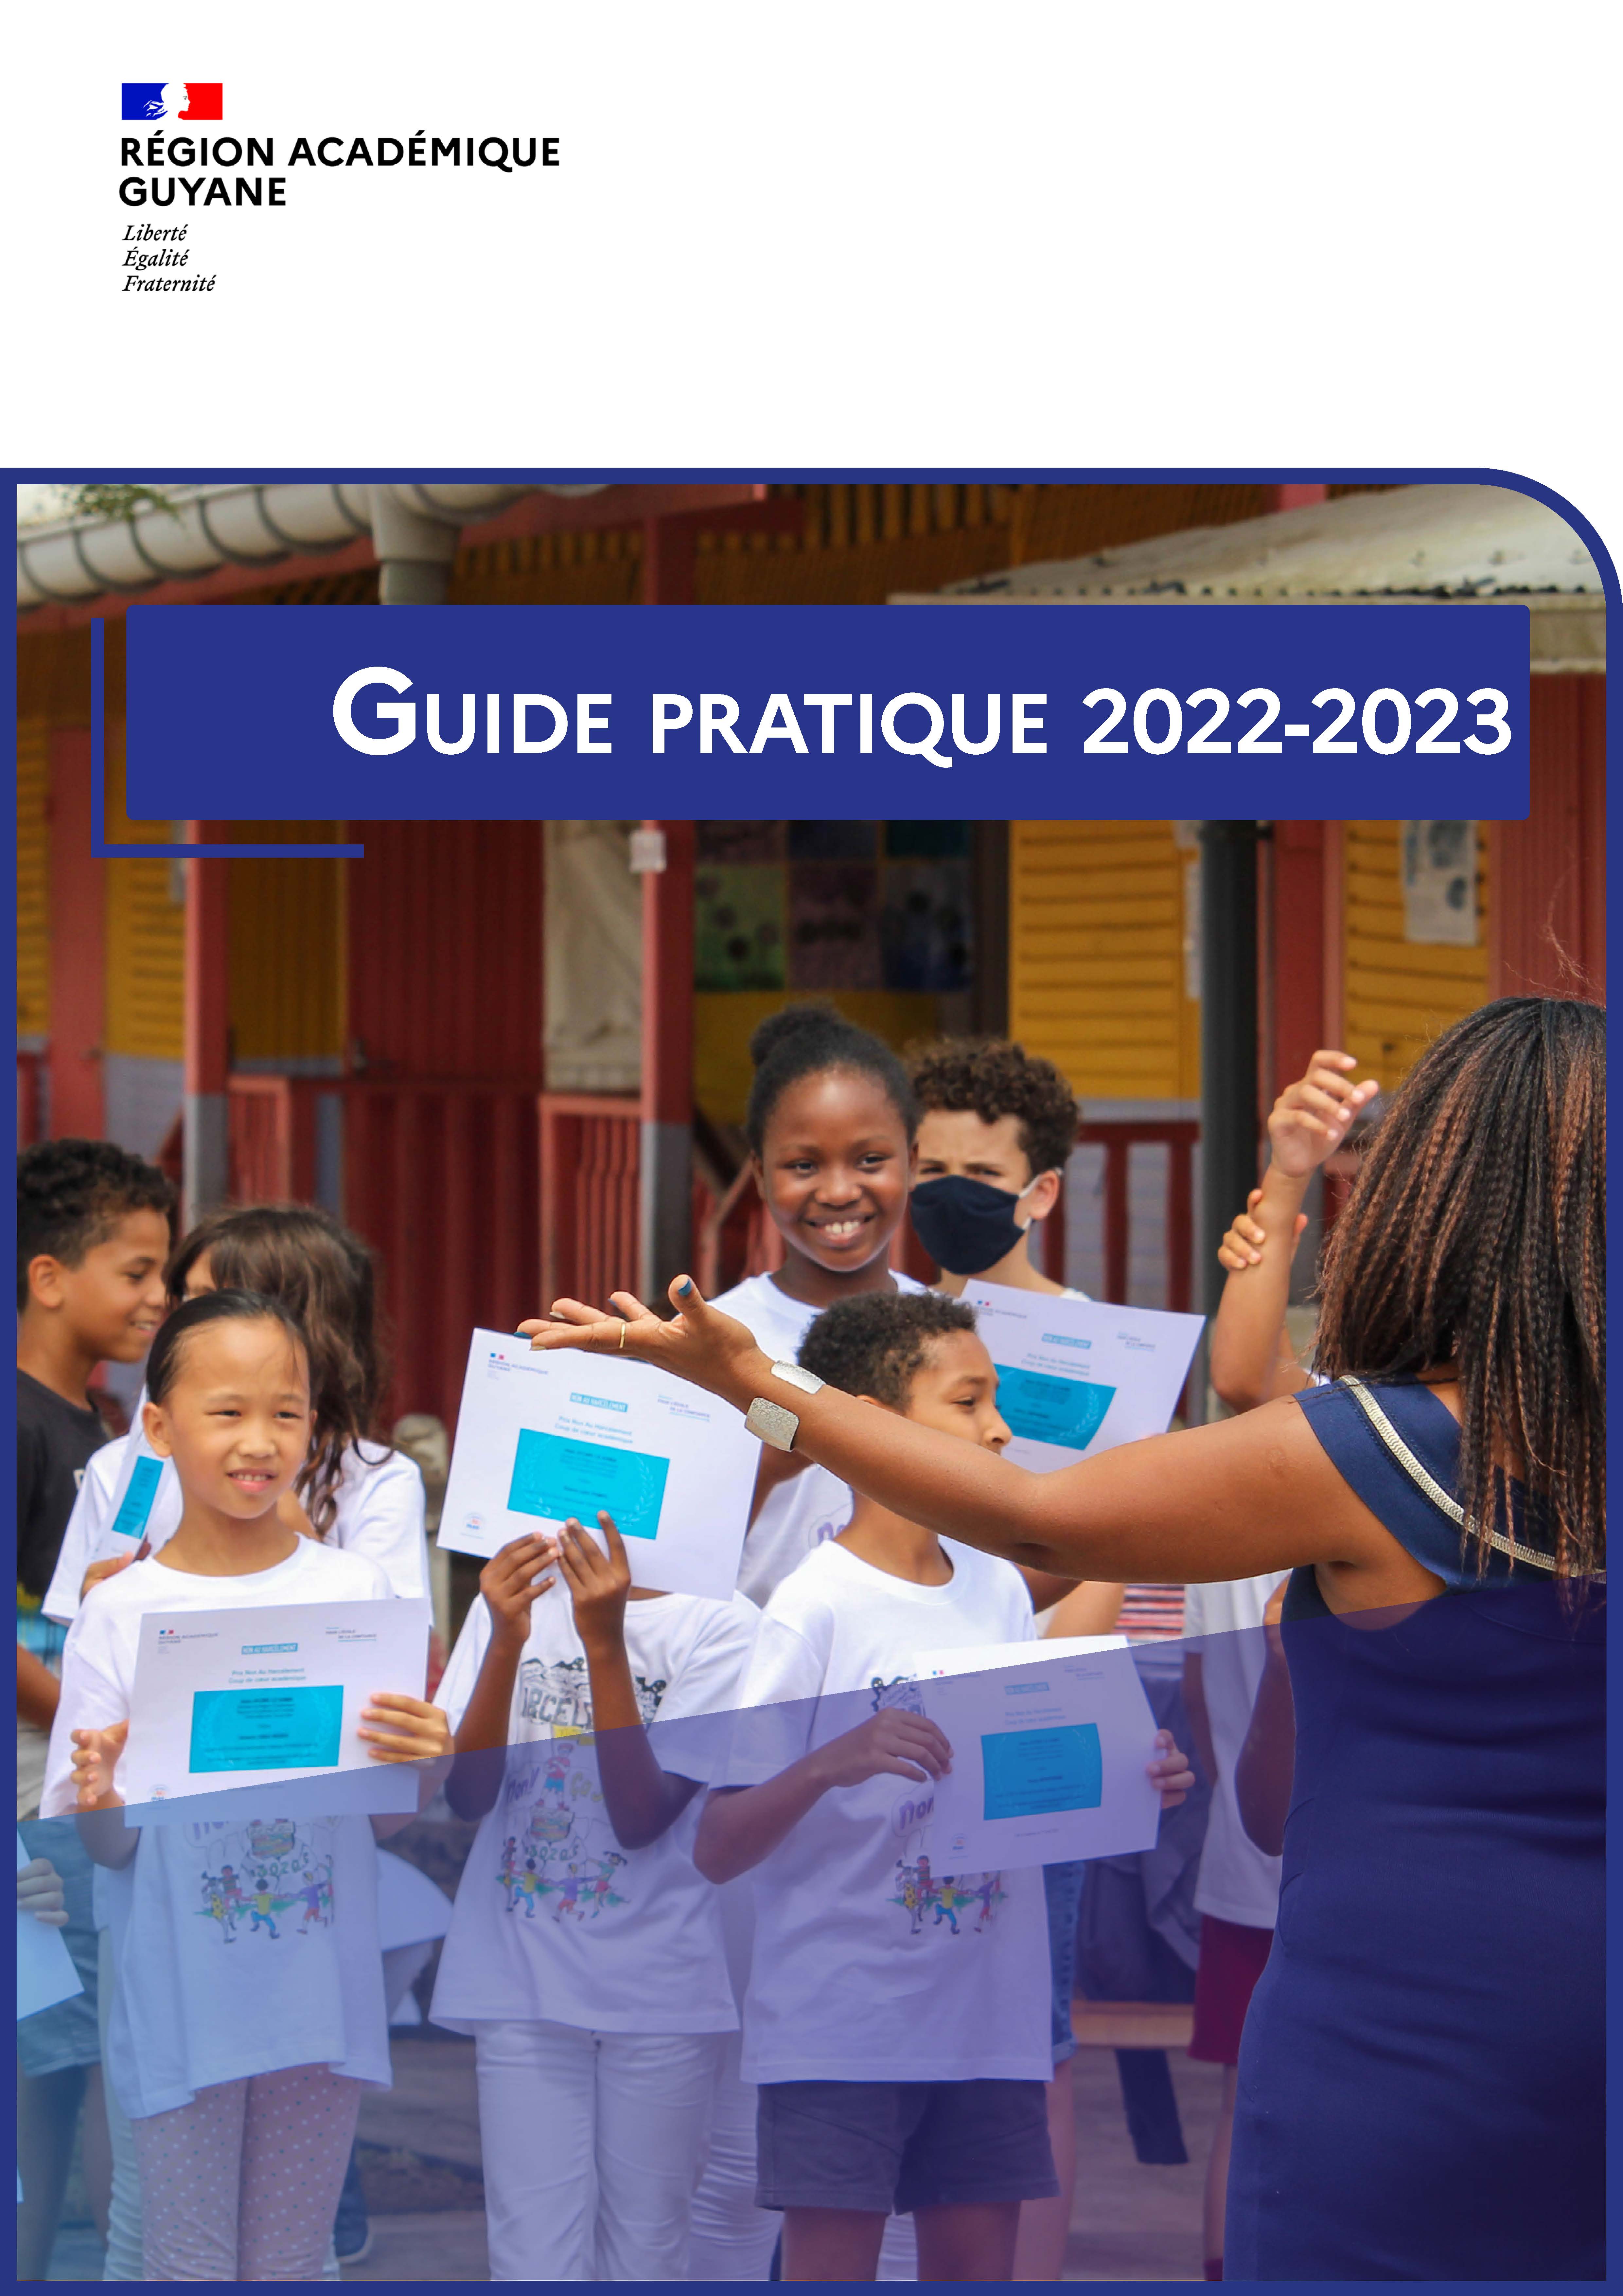 Couverture guide pratique 2022-2023